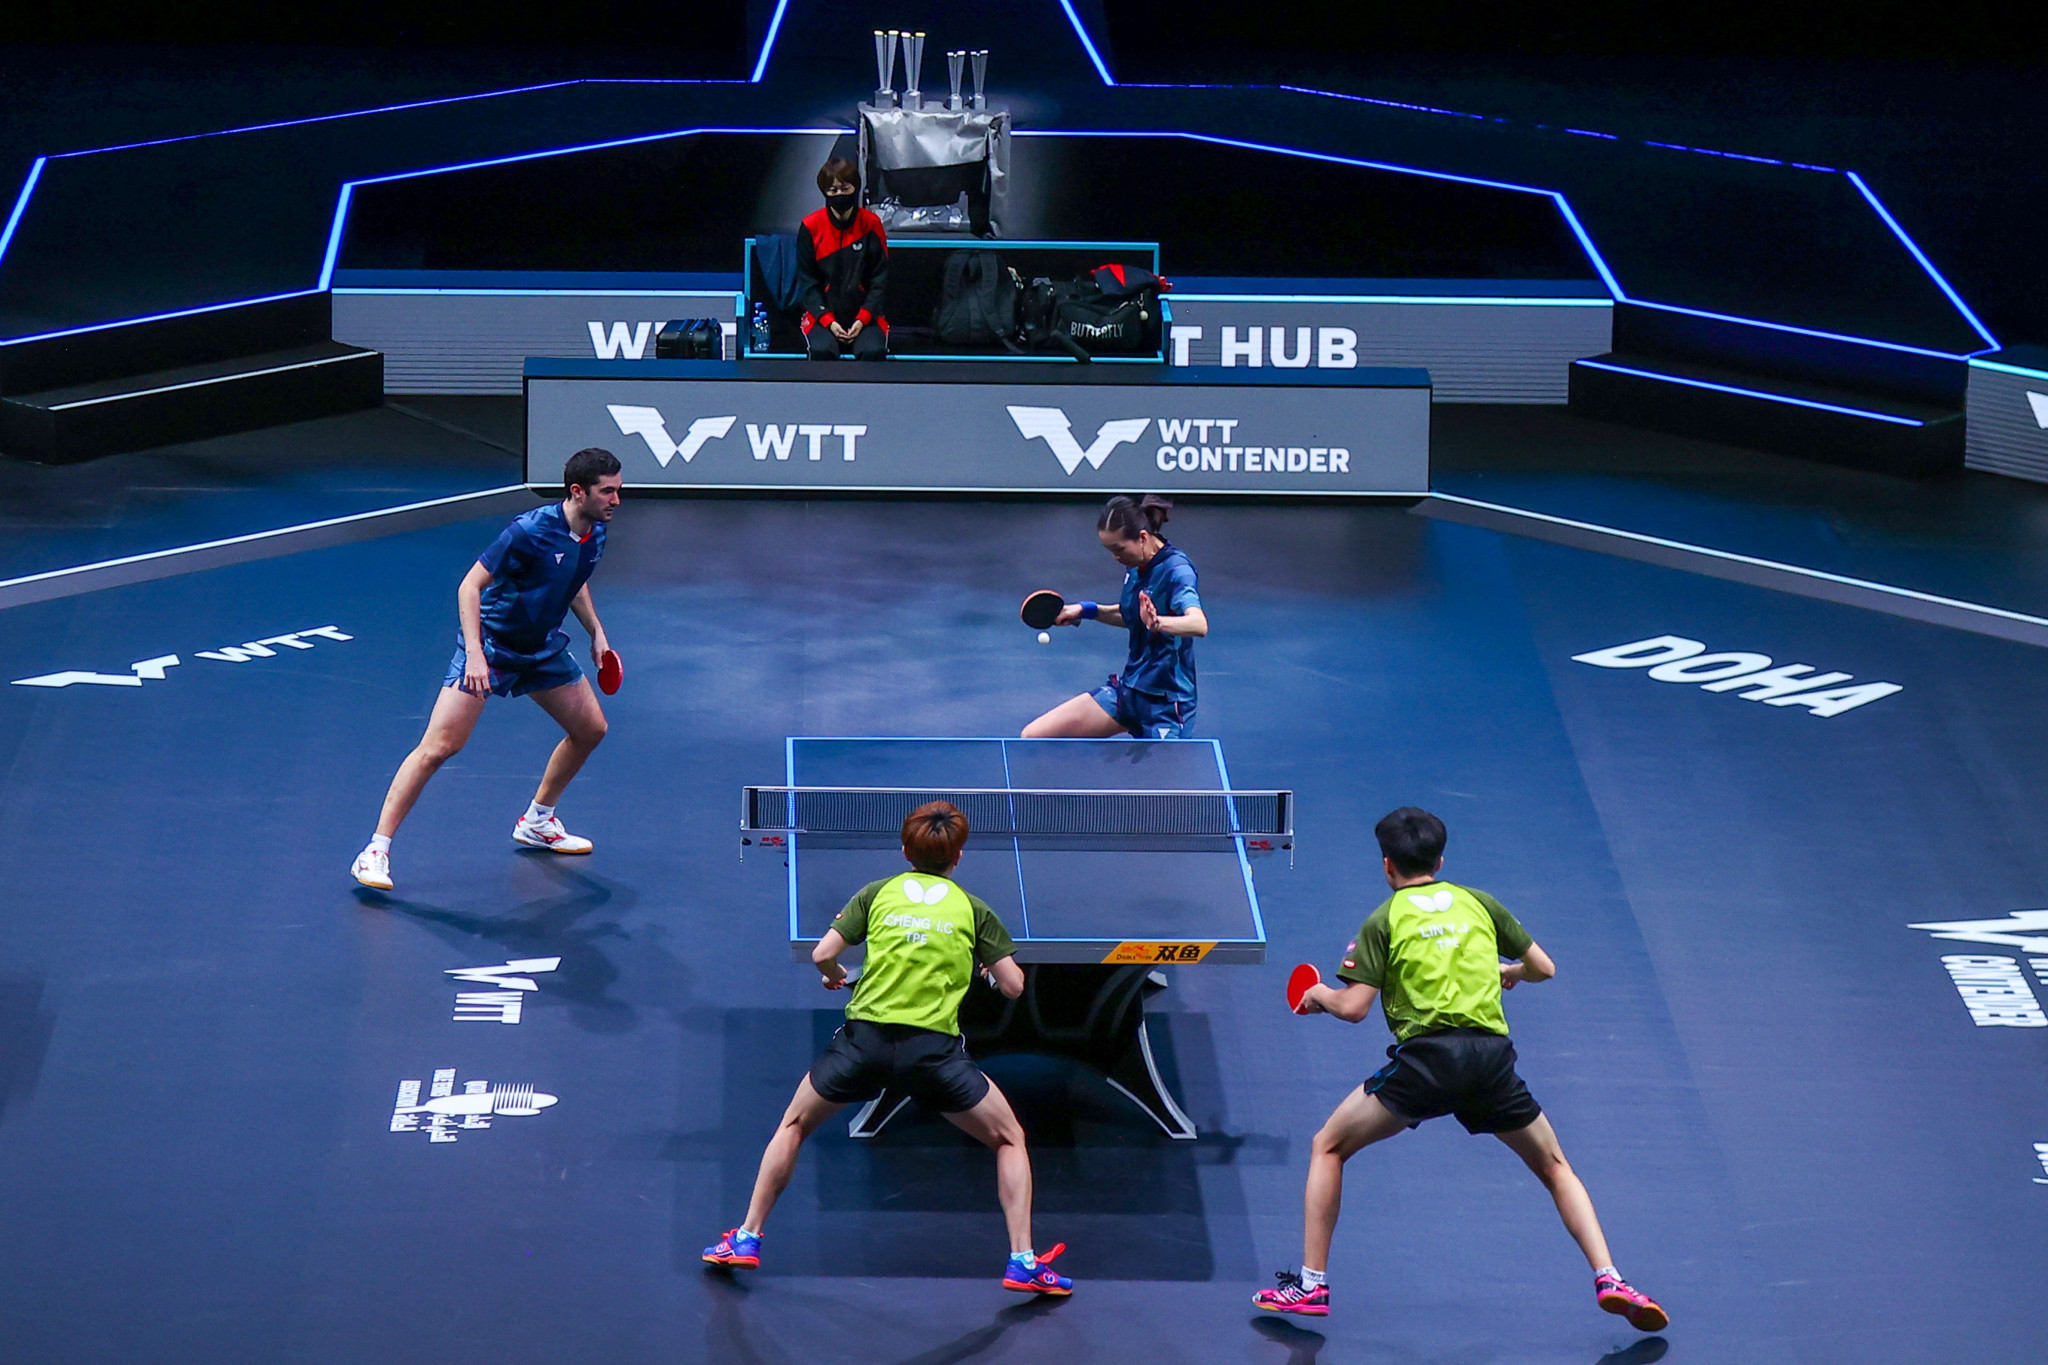 World Table Tennis cherche à mettre en scène le hub chinois après la conclusion des Jeux Olympiques © Getty Images